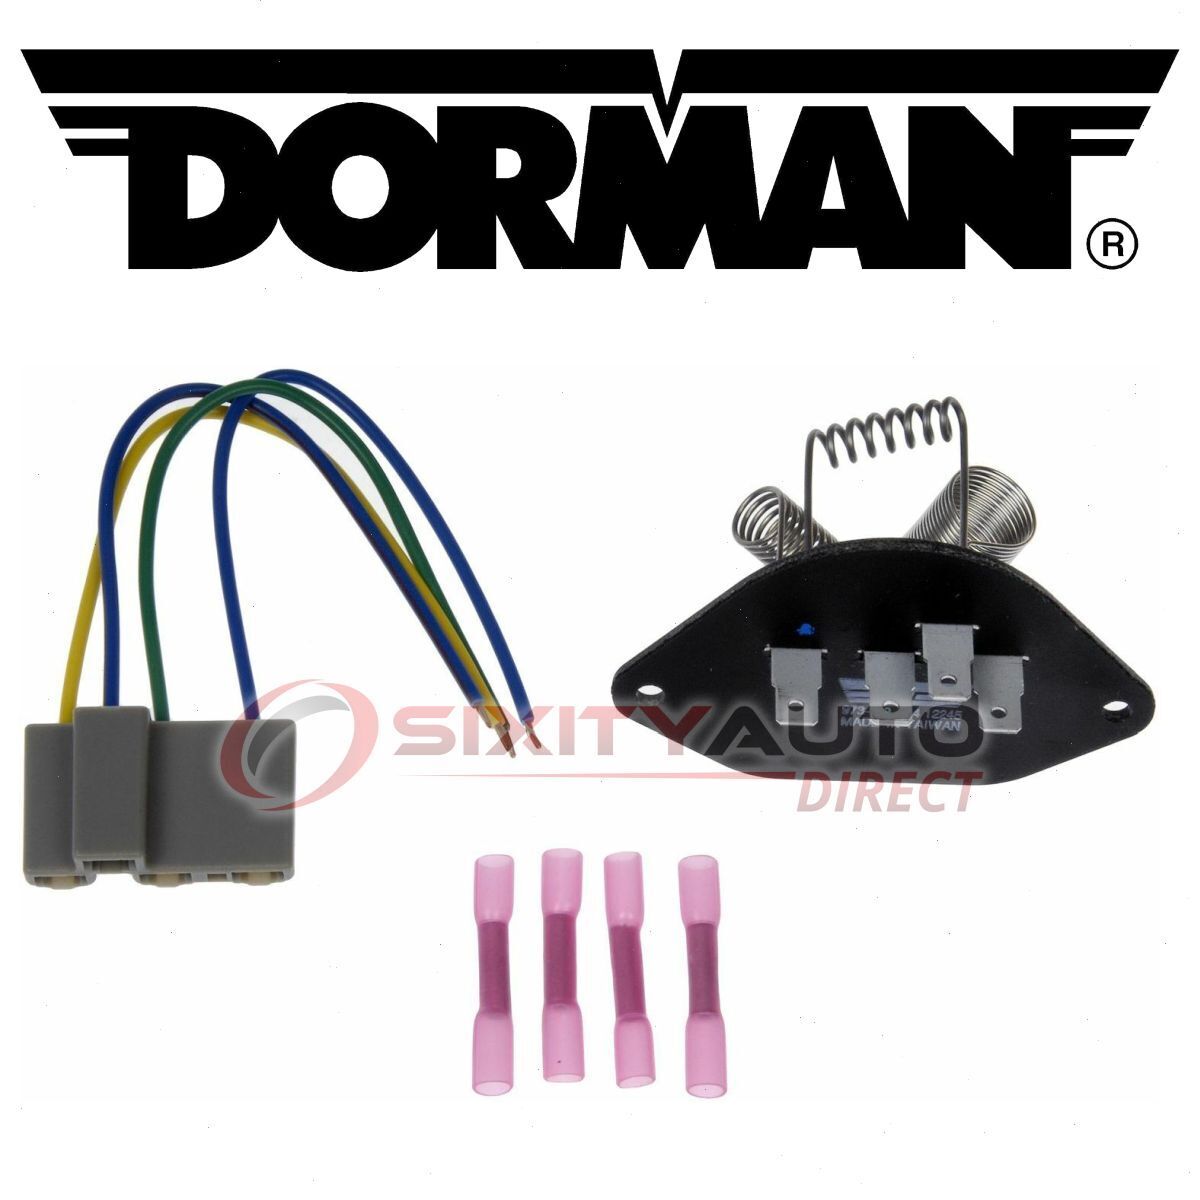 Dorman HVAC Blower Motor Resistor Kit for 1978-1987 Oldsmobile Cutlass lb